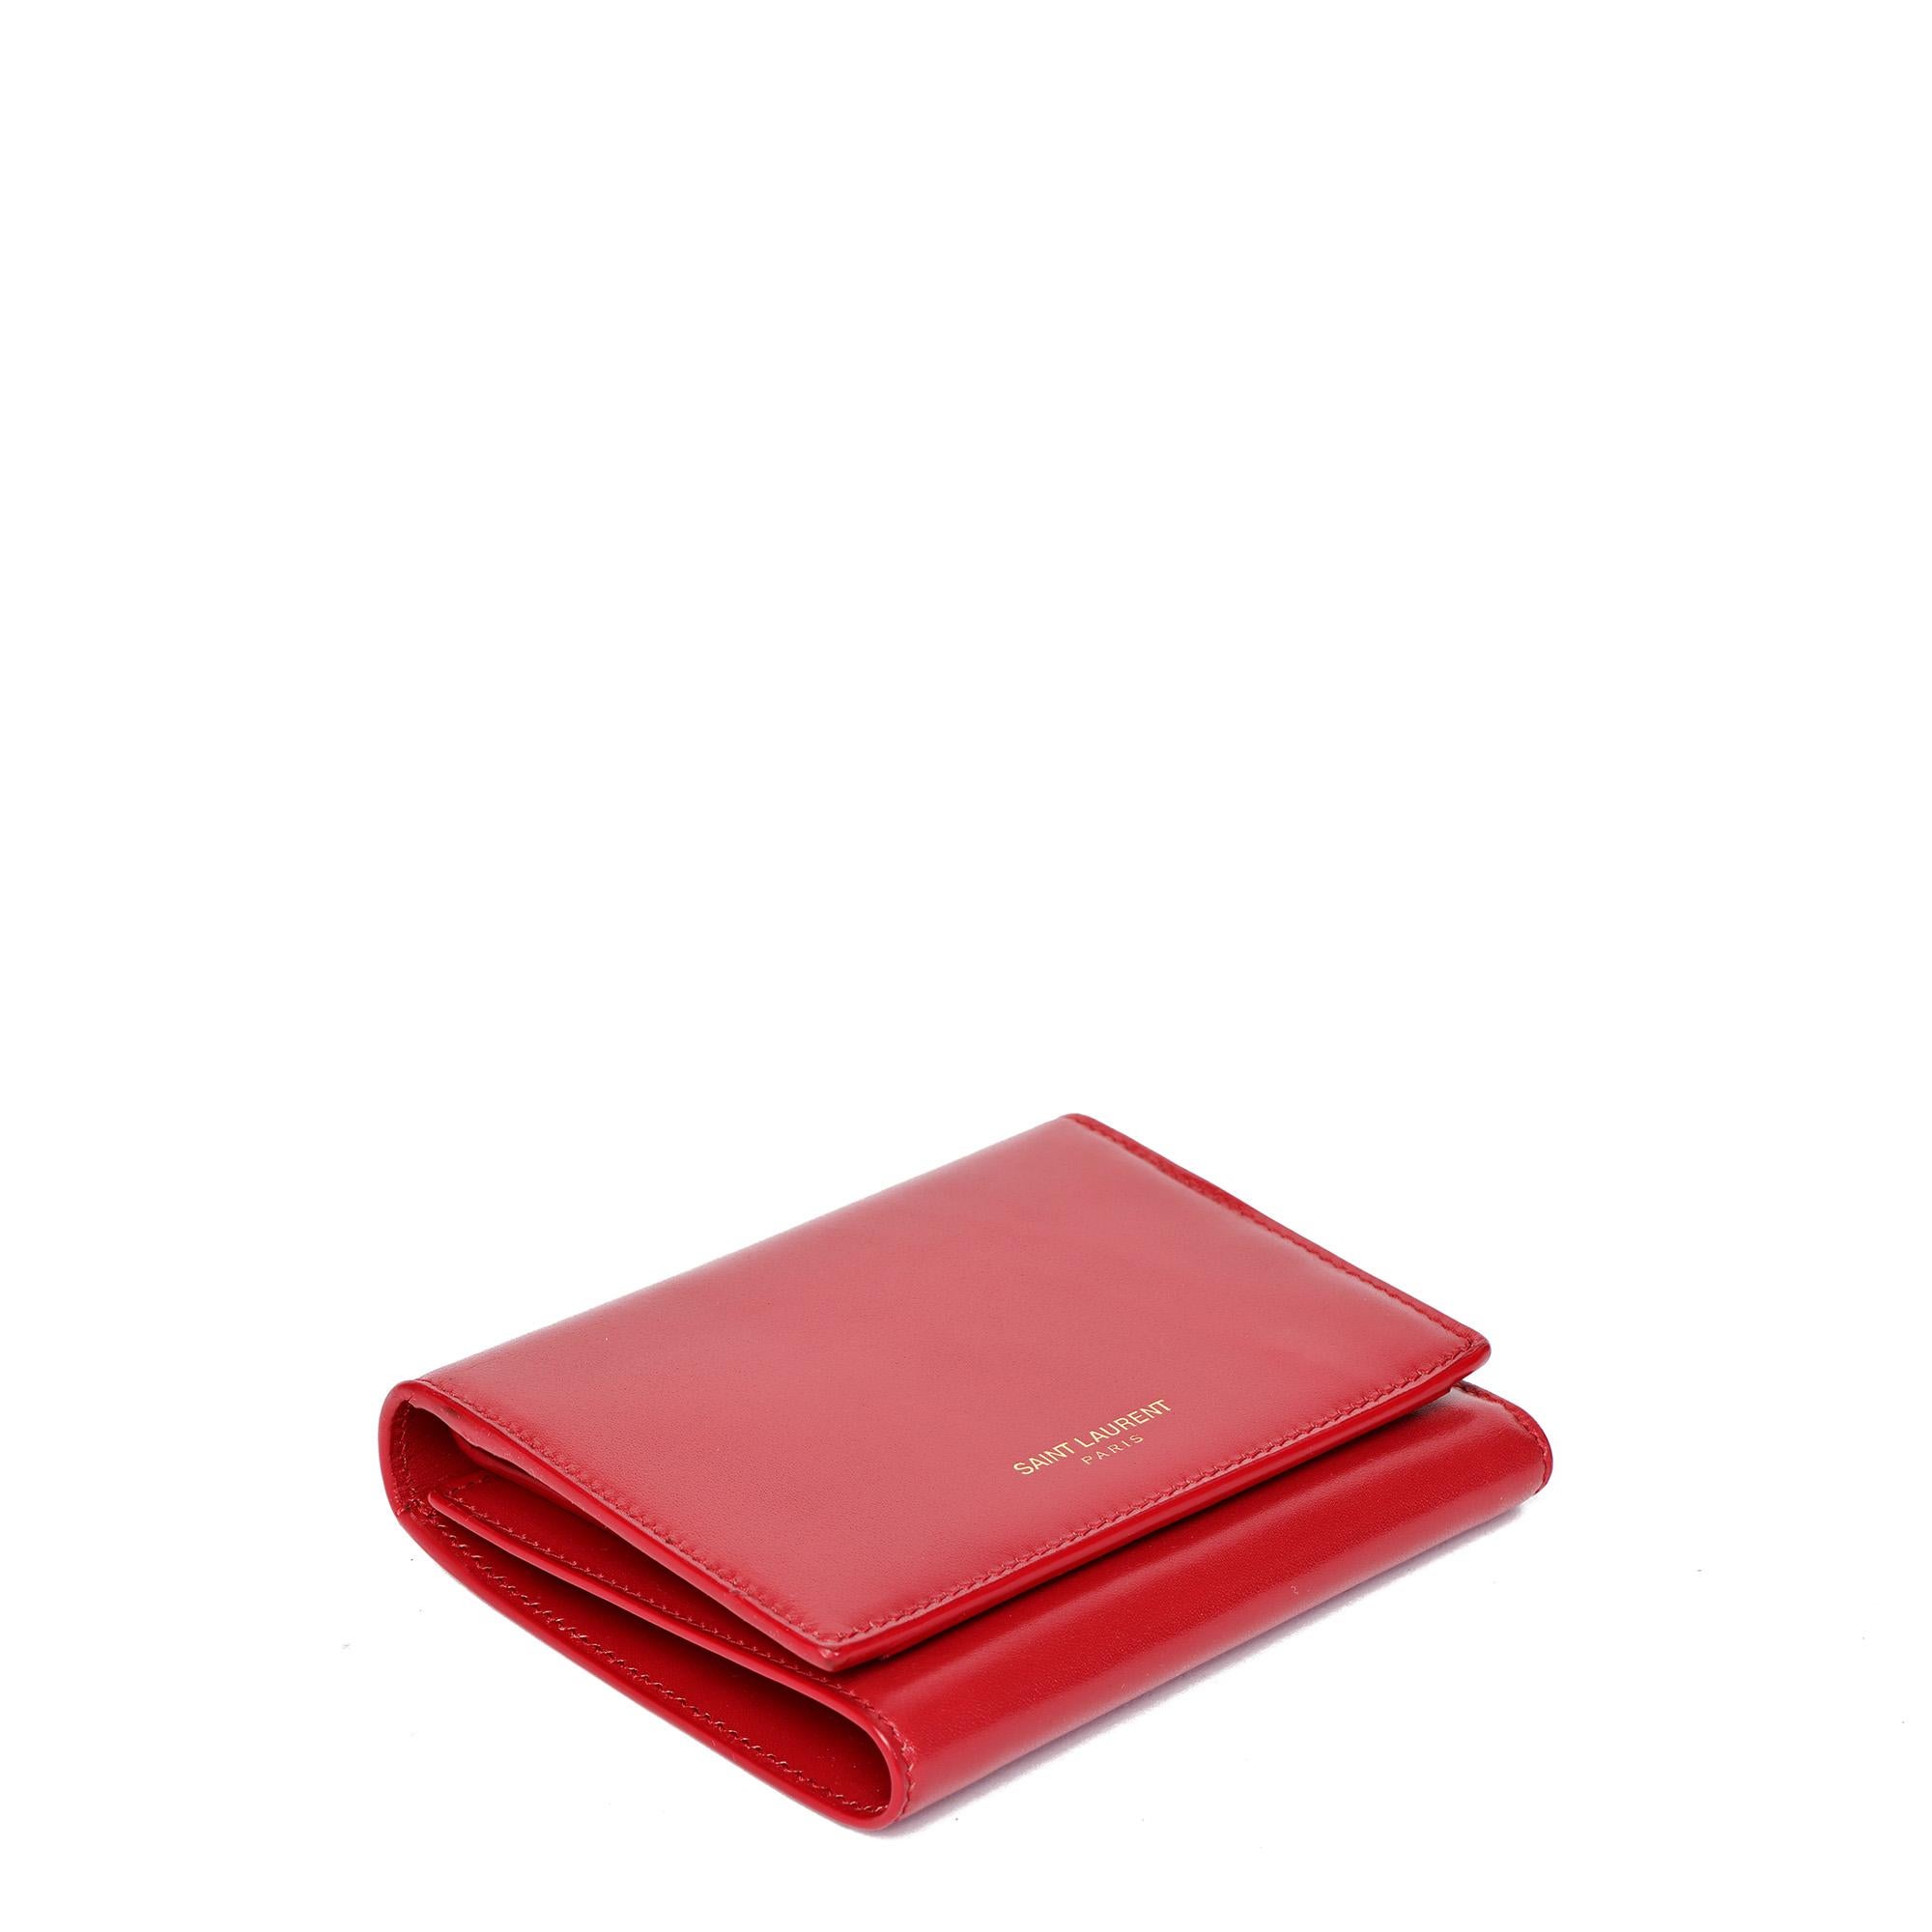 Saint Laurent Rouge Orient Glänzendes Glattleder Kompakte Brieftasche mit Doppelfalz

KONDITIONSNOTEN
Das Äußere ist in ausgezeichnetem Zustand mit leichten Gebrauchsspuren.
Der Innenraum ist in ausgezeichnetem Zustand mit leichten